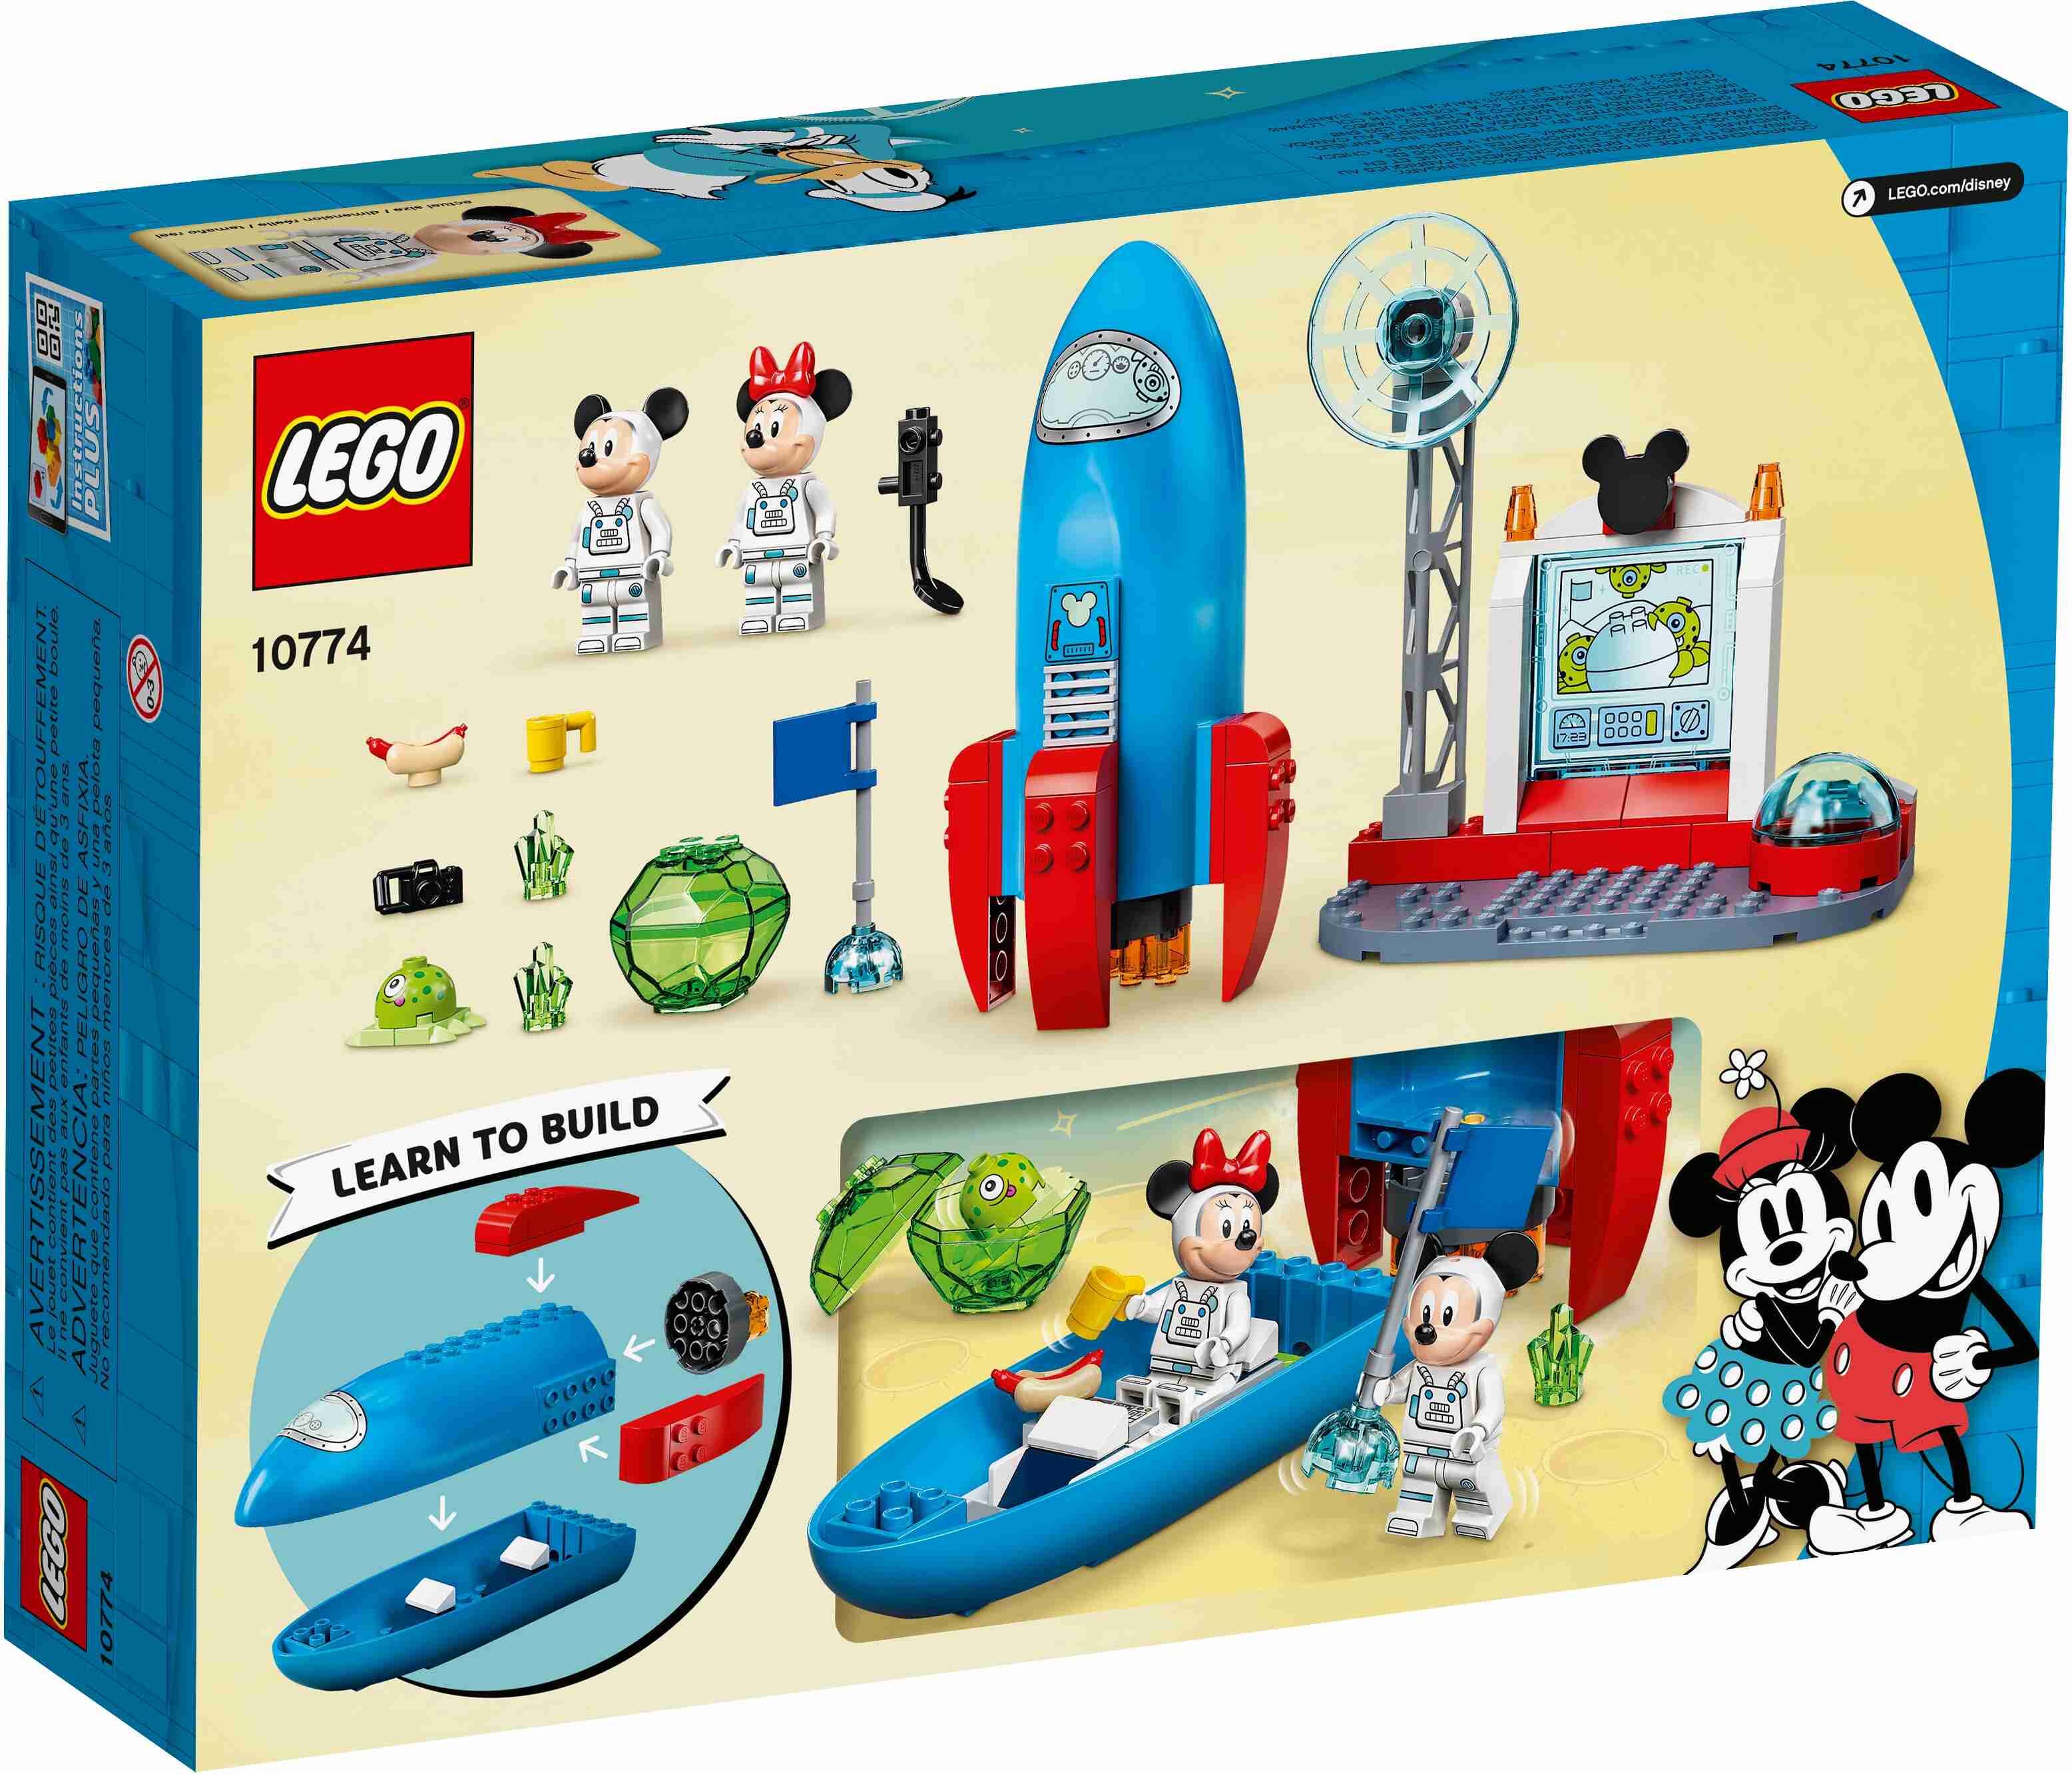 LEGO 10774 Mickys und Minnies Weltraumrakete mit einer aufklappbaren Rakete